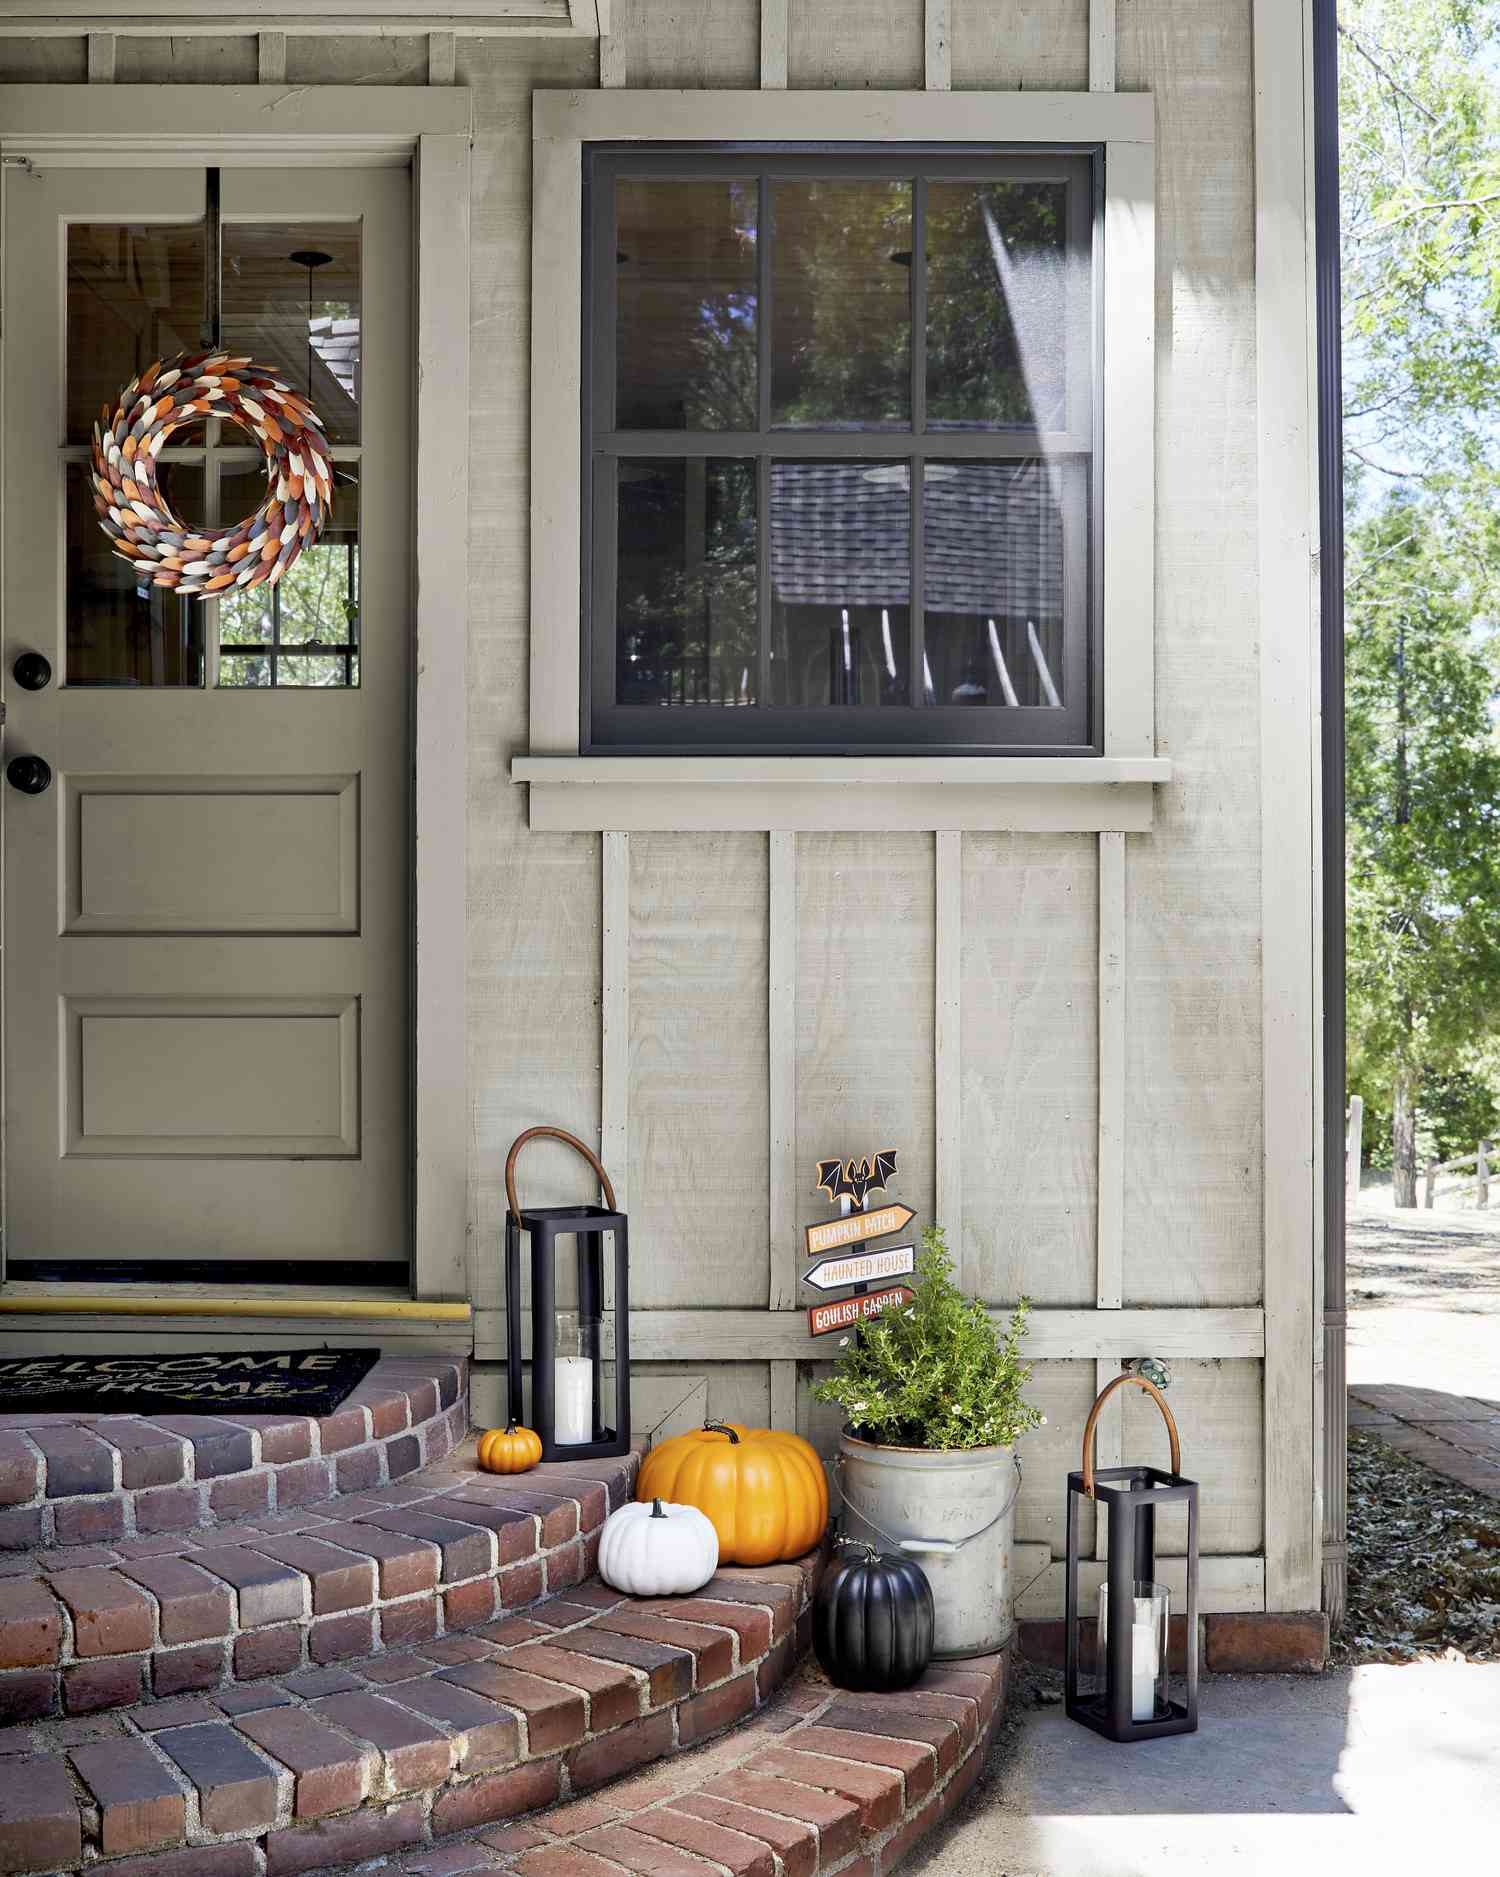 Escalones del porche delantero decorados para el otoño